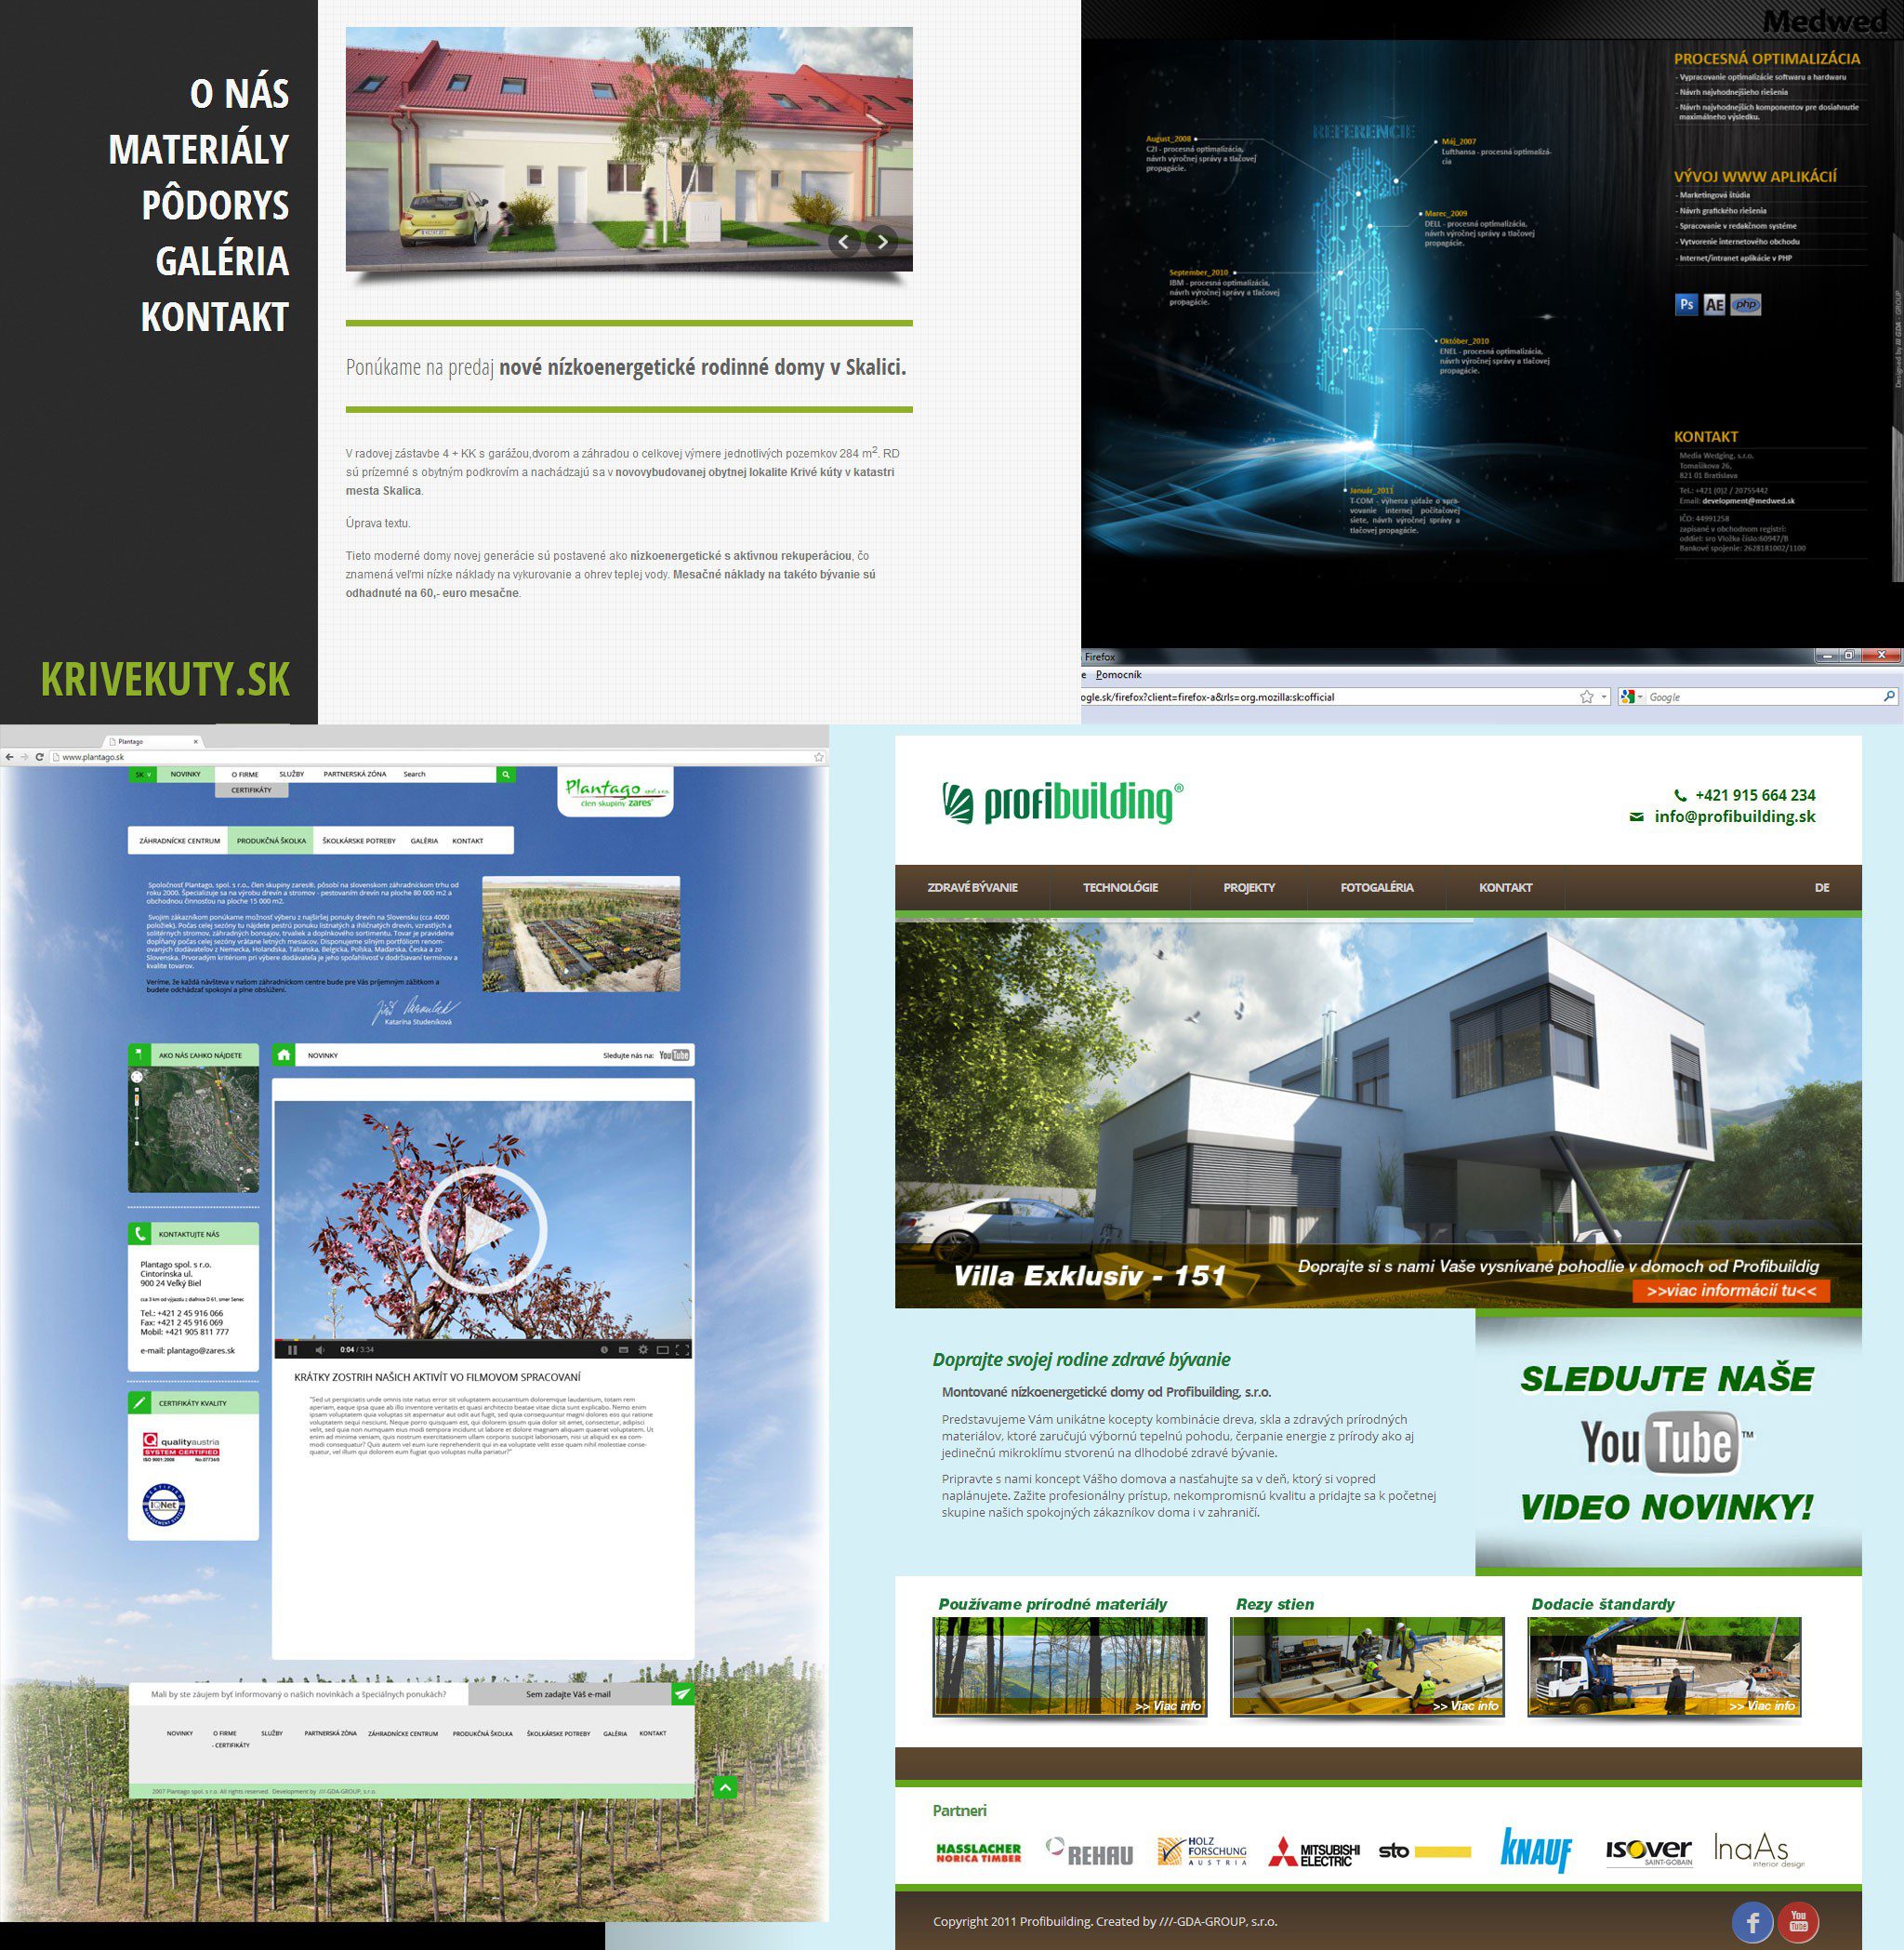 Gestaltung von Webseiten - KRIVEKUTY, Profibuilding, Plantago, Medwed - Startseite